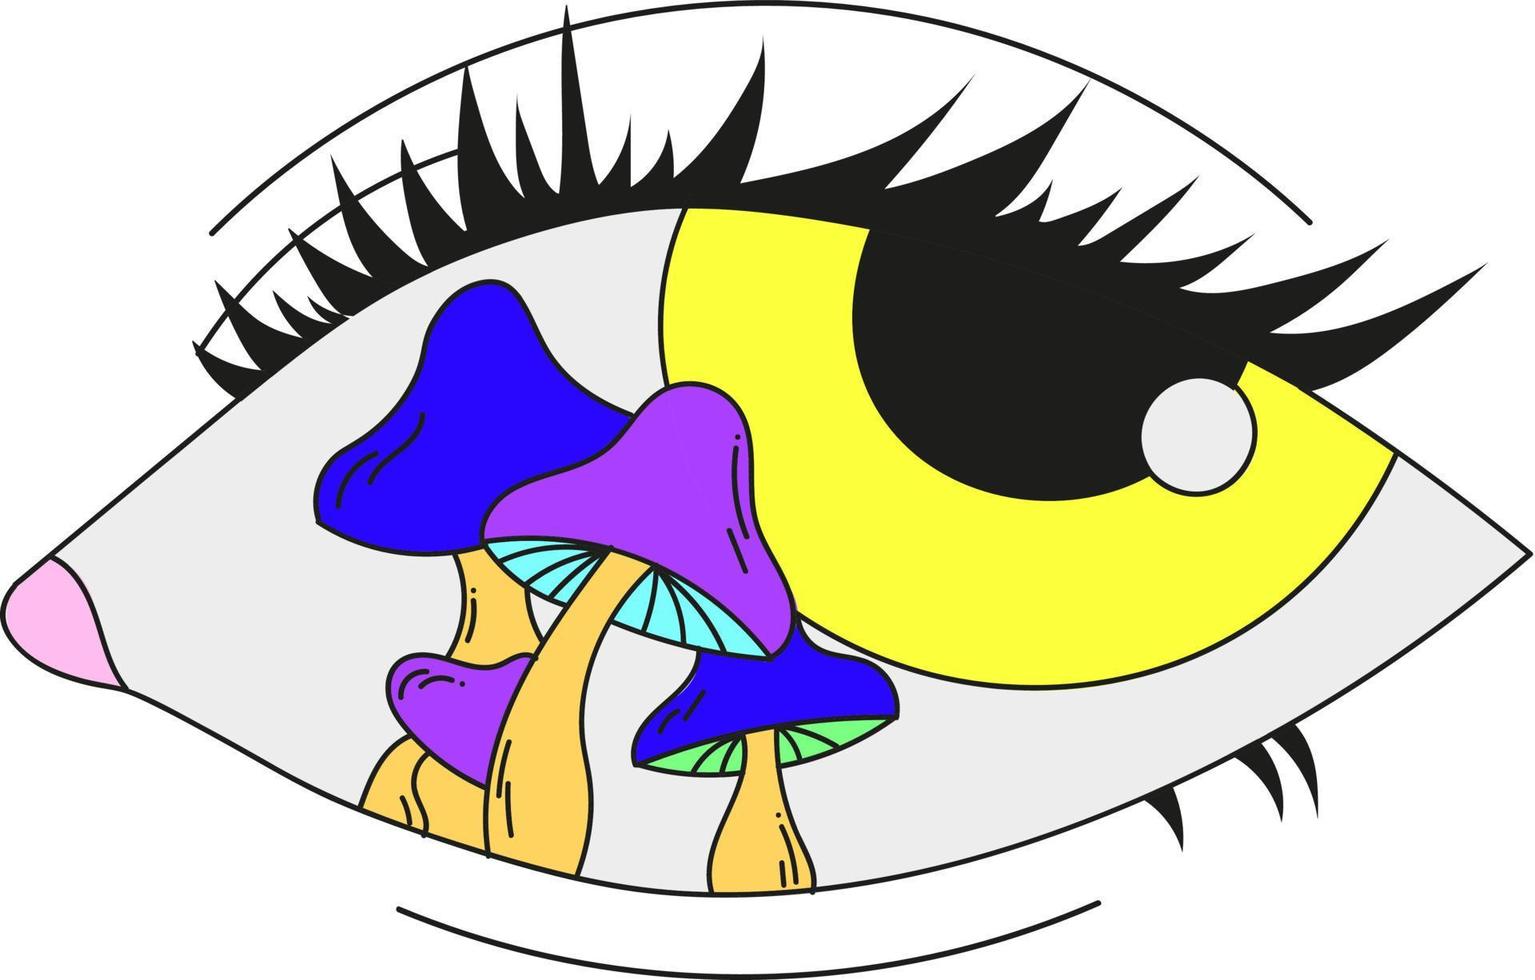 ett psykedeliskt öga med svamp inuti. vektor illustration isolerad på en vit bakgrund.